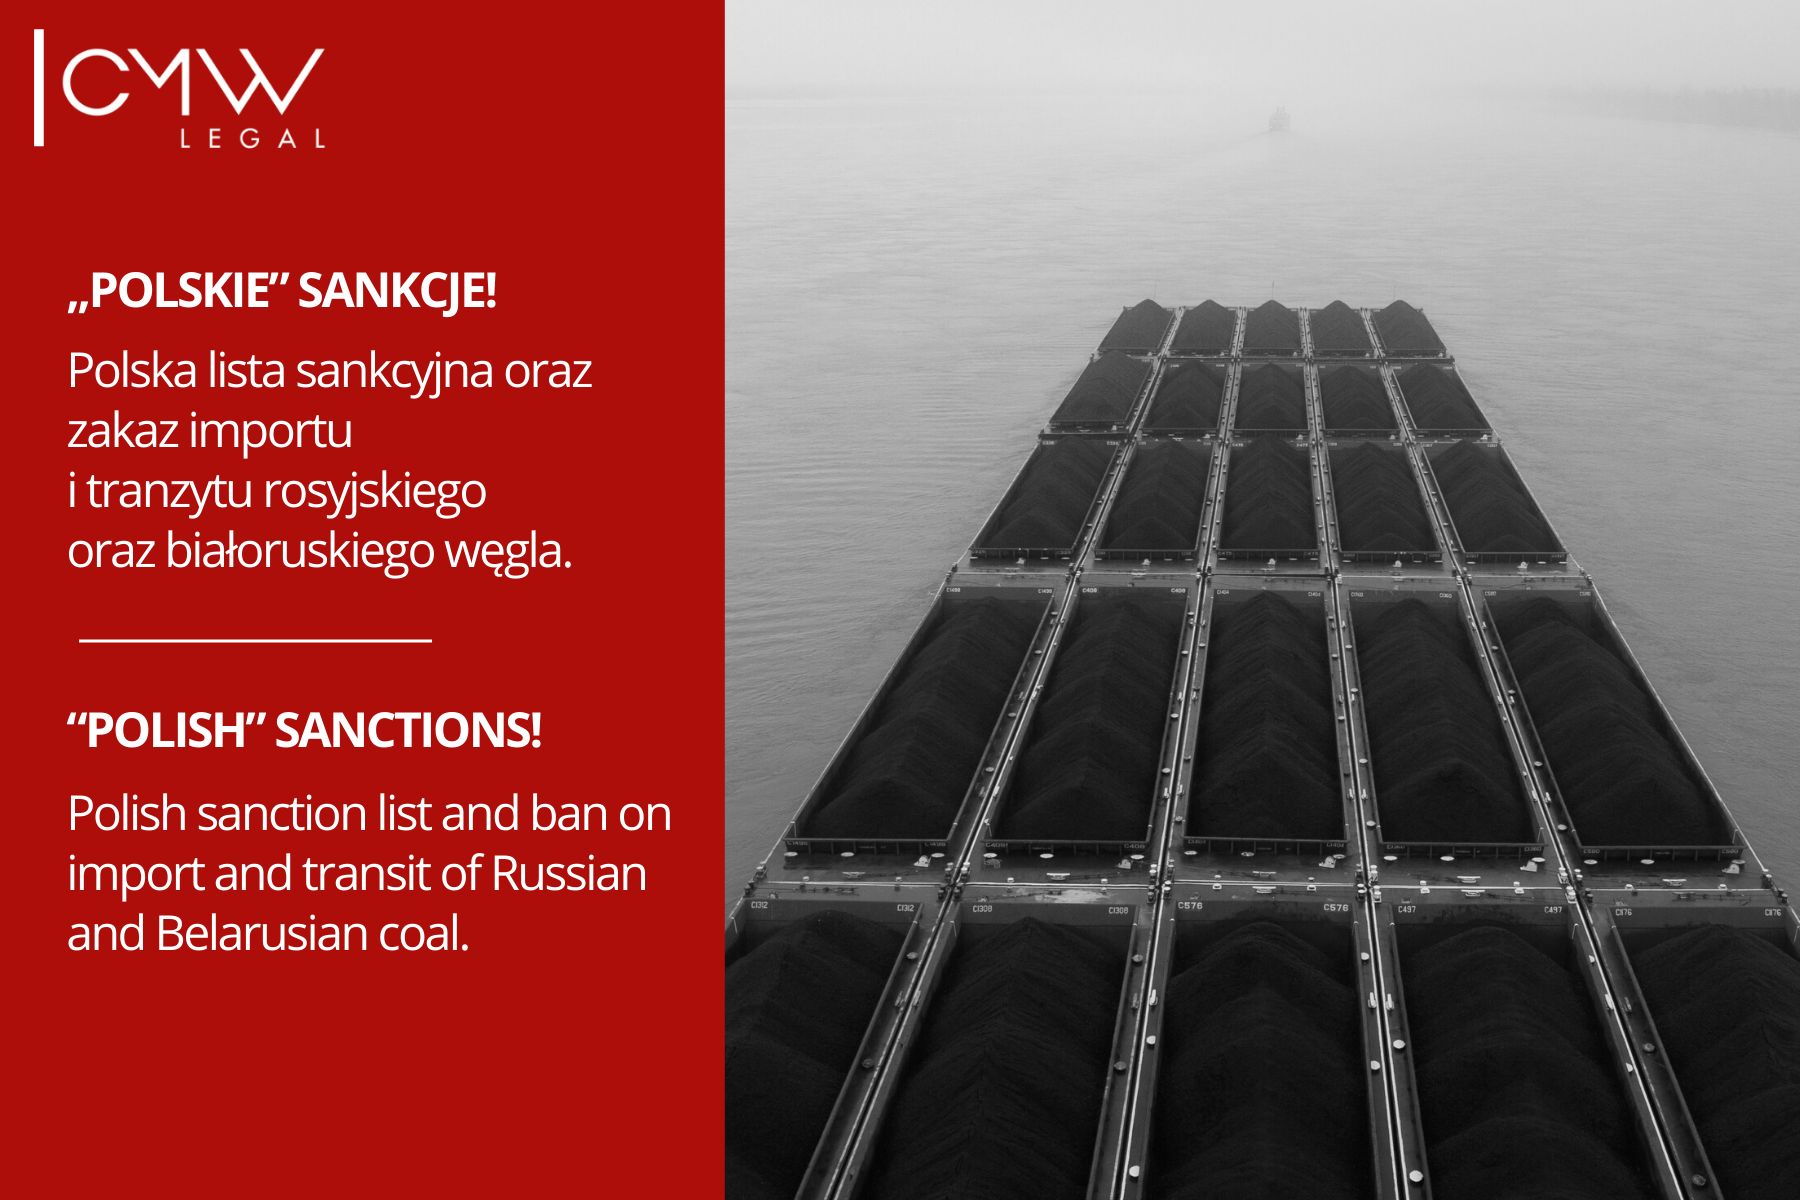  Polska lista sankcyjna oraz zakaz importu i tranzytu rosyjskiego oraz białoruskiego węgla